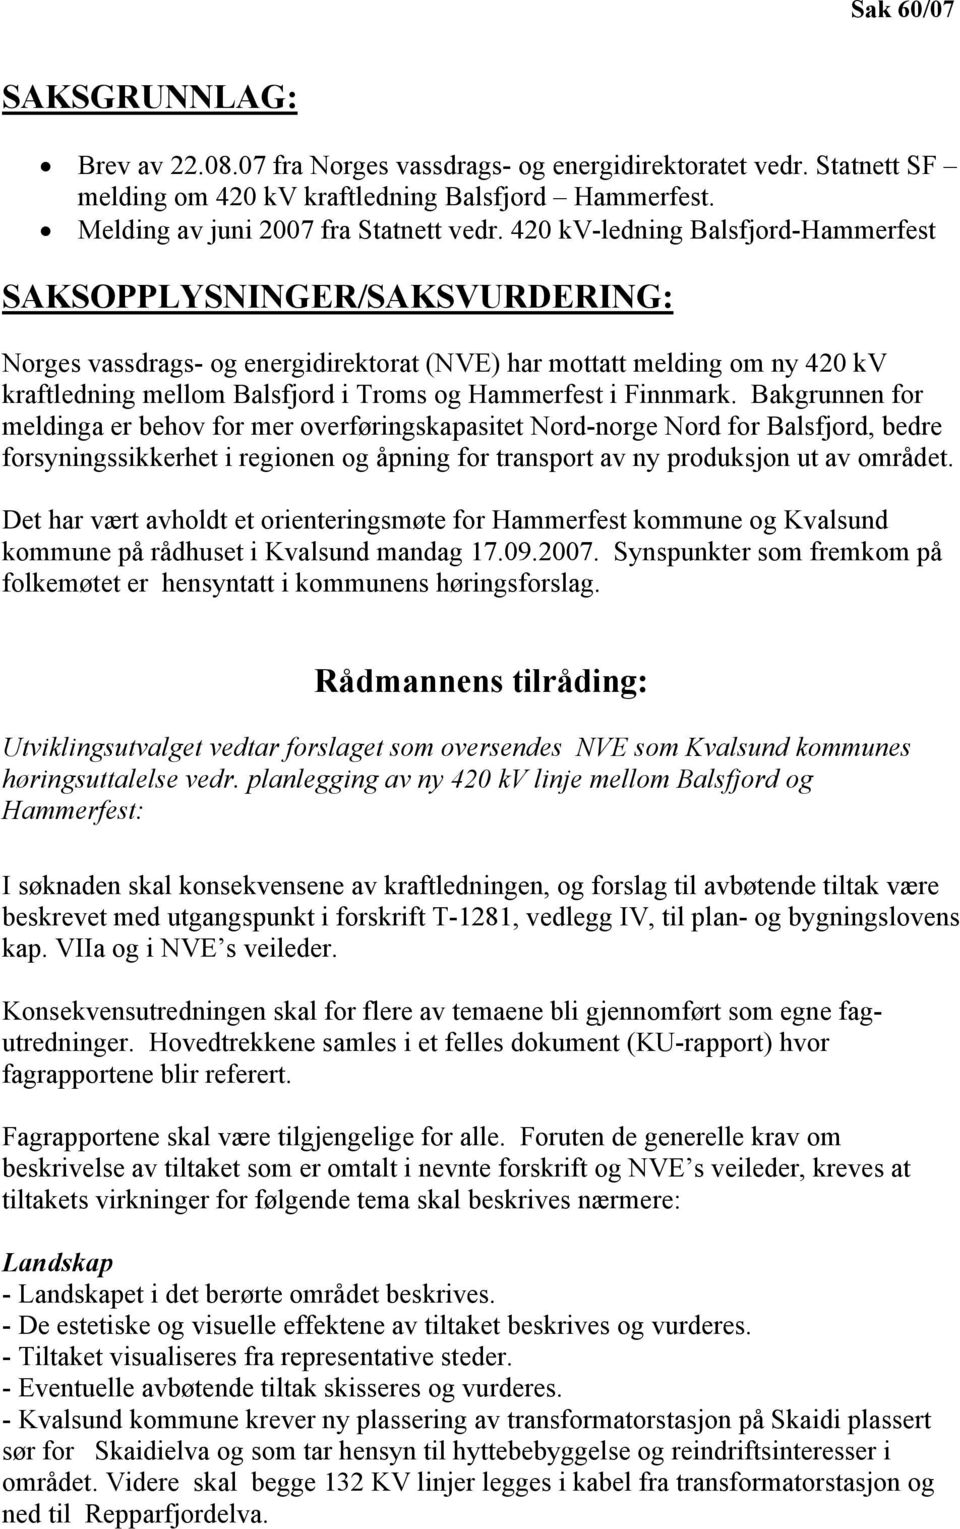 Finnmark. Bakgrunnen for meldinga er behov for mer overføringskapasitet Nord-norge Nord for Balsfjord, bedre forsyningssikkerhet i regionen og åpning for transport av ny produksjon ut av området.